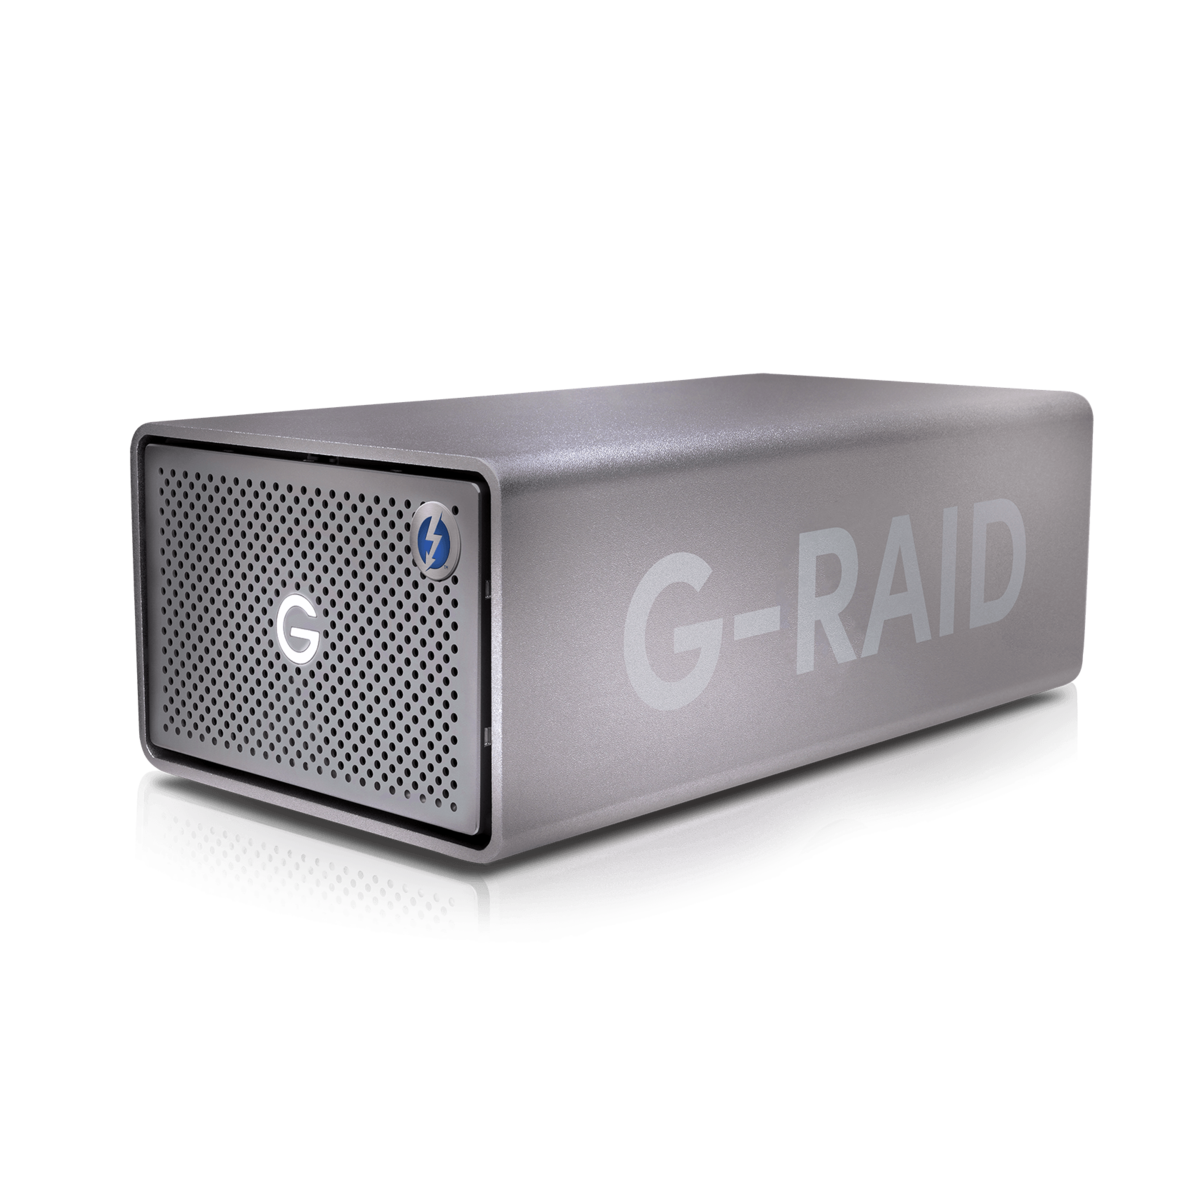 SanDisk Professional G-RAID 2 Space Grey 36TB